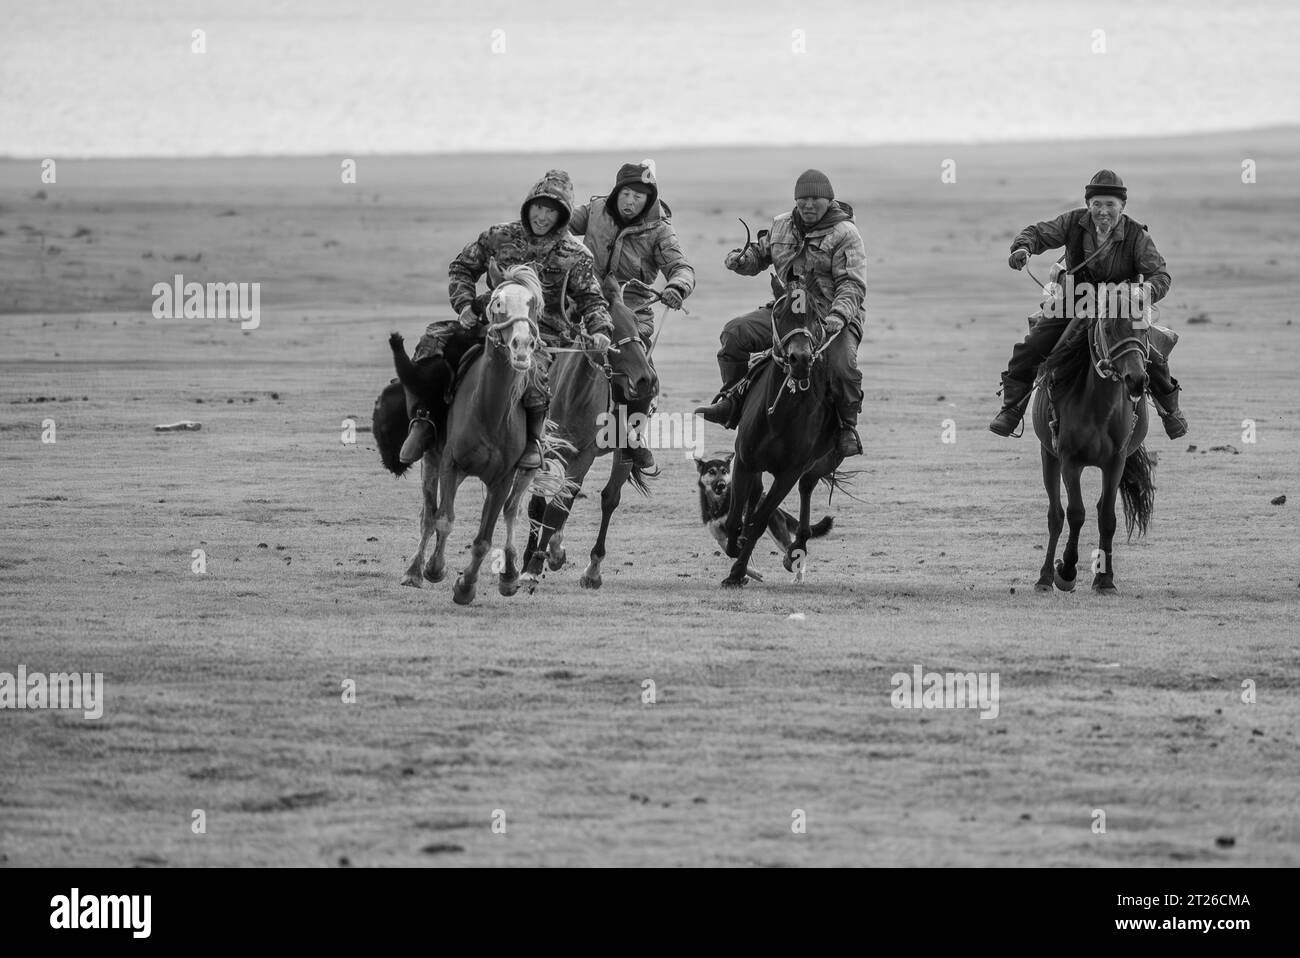 Kok-boru Kyrgyzstan -Buzkashi Goat Pull è lo sport tradizionale nazionale in cui i giocatori a cavallo Hich tentano di posizionare una capra o un polpaccio Foto Stock